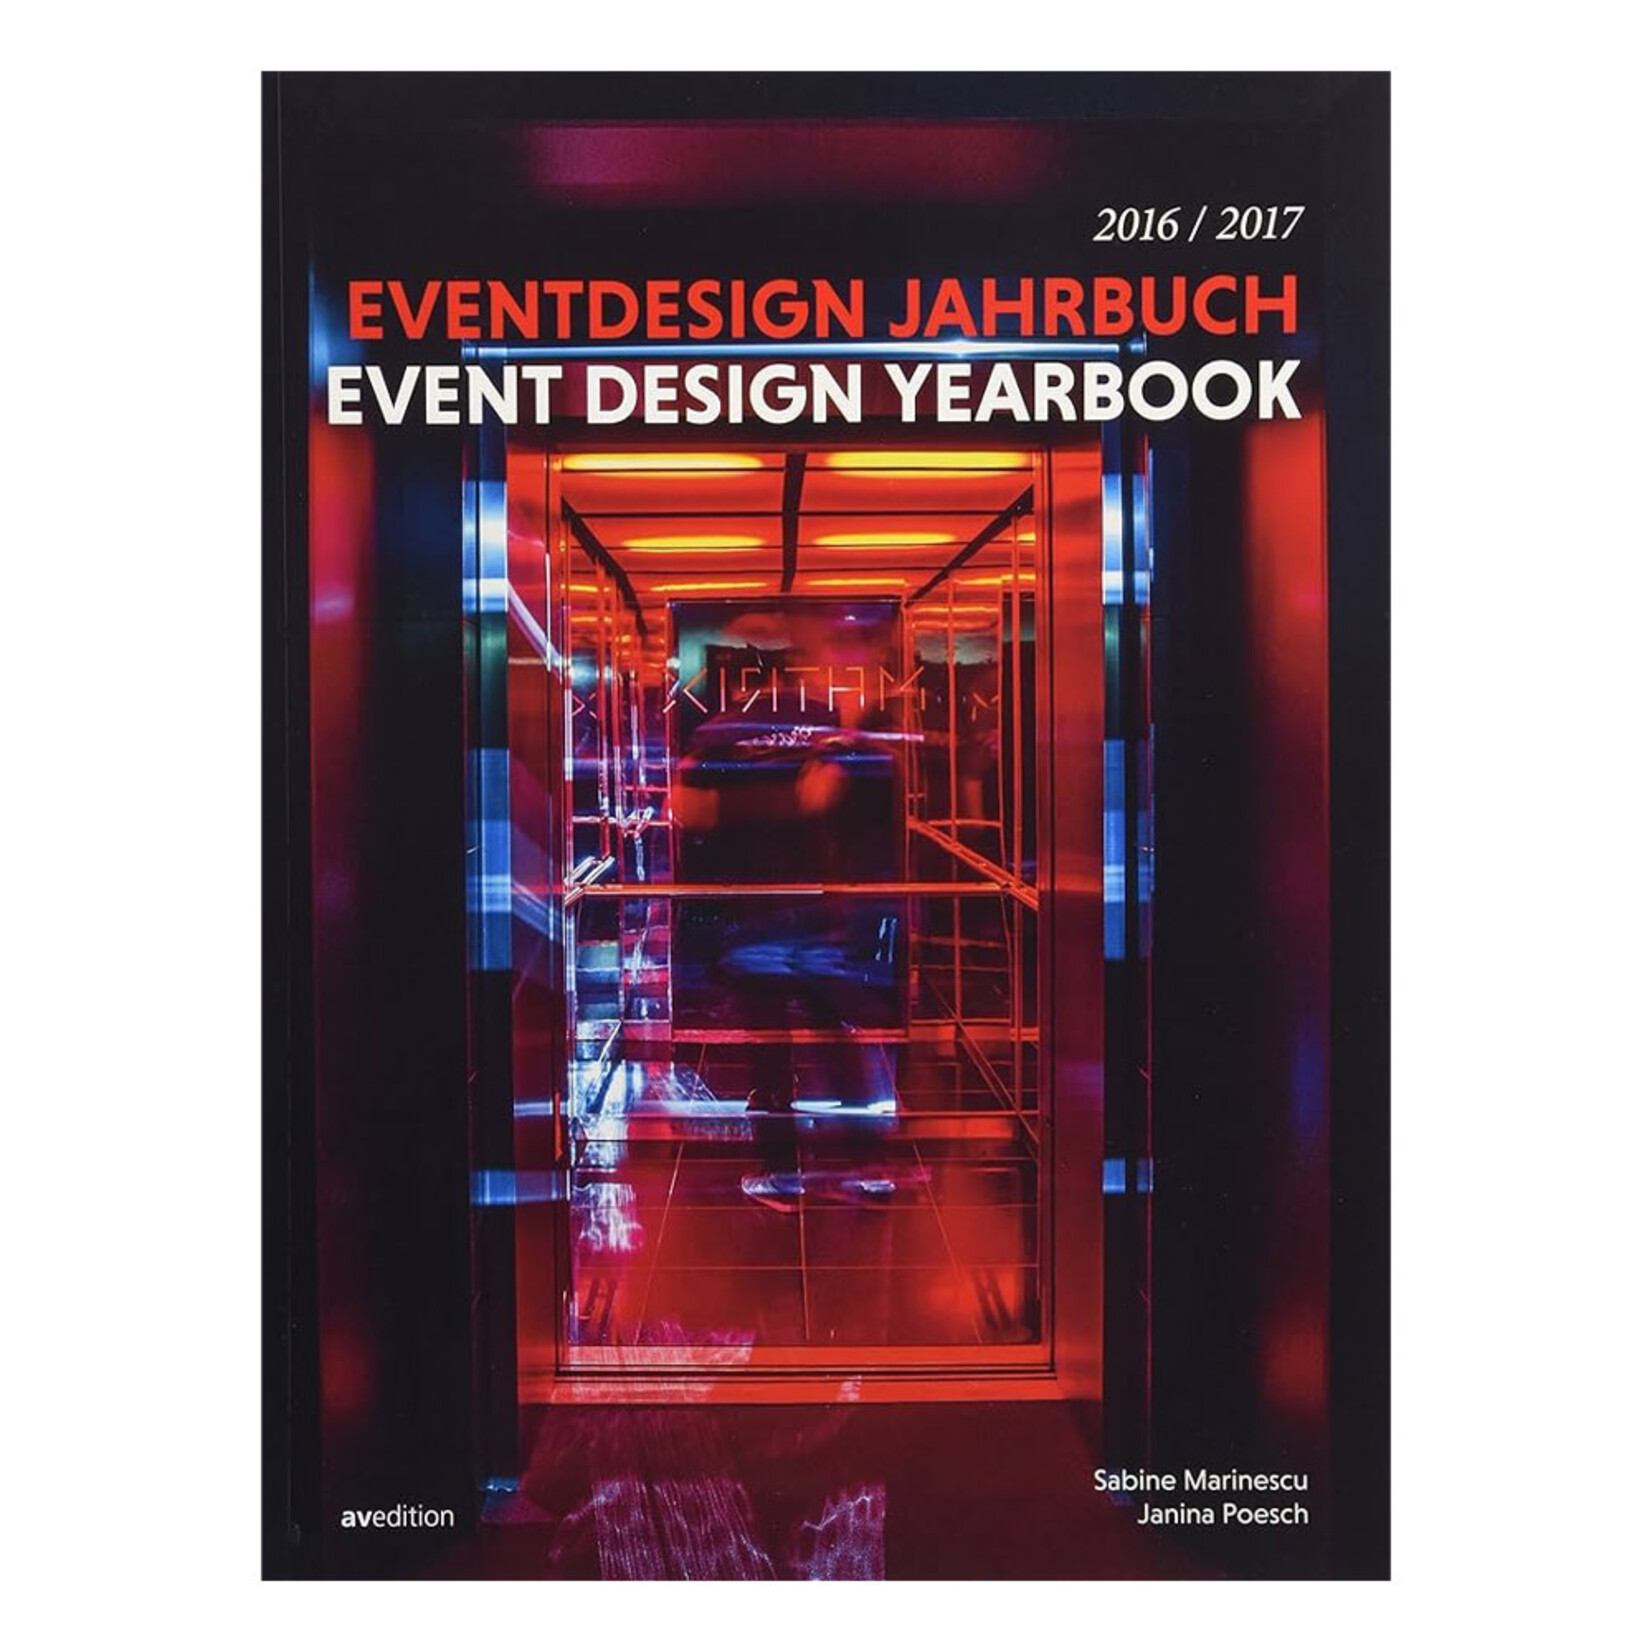 Event Design Jahrbuch Yearbook 2016/2017